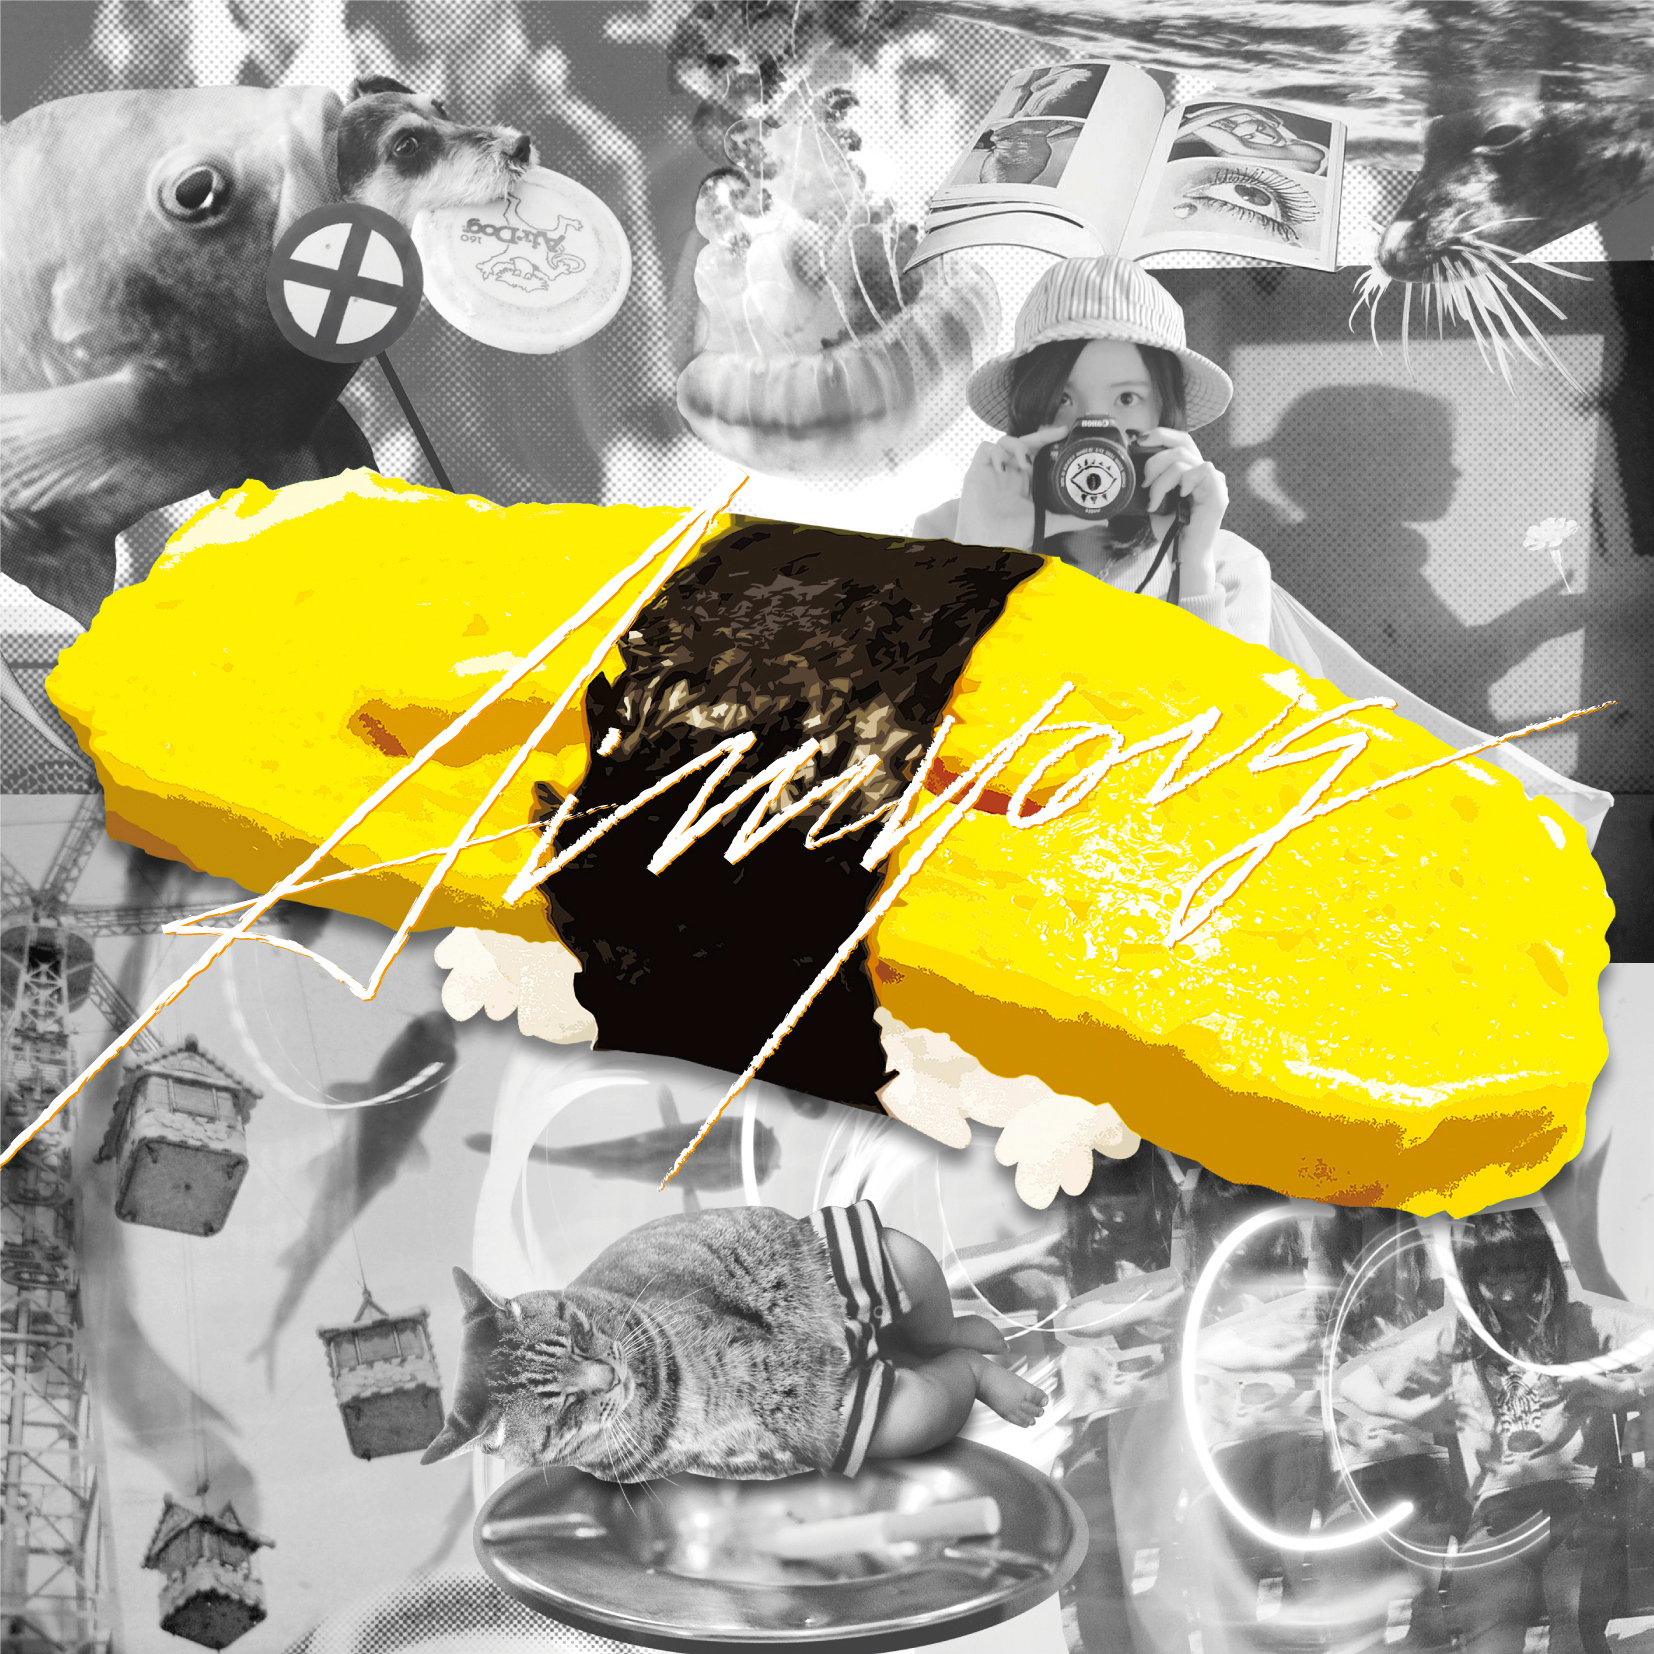 あいみょん インディーズ1stミニアルバム『tamago』(2015年5月20日発売) 高画質CDジャケット画像